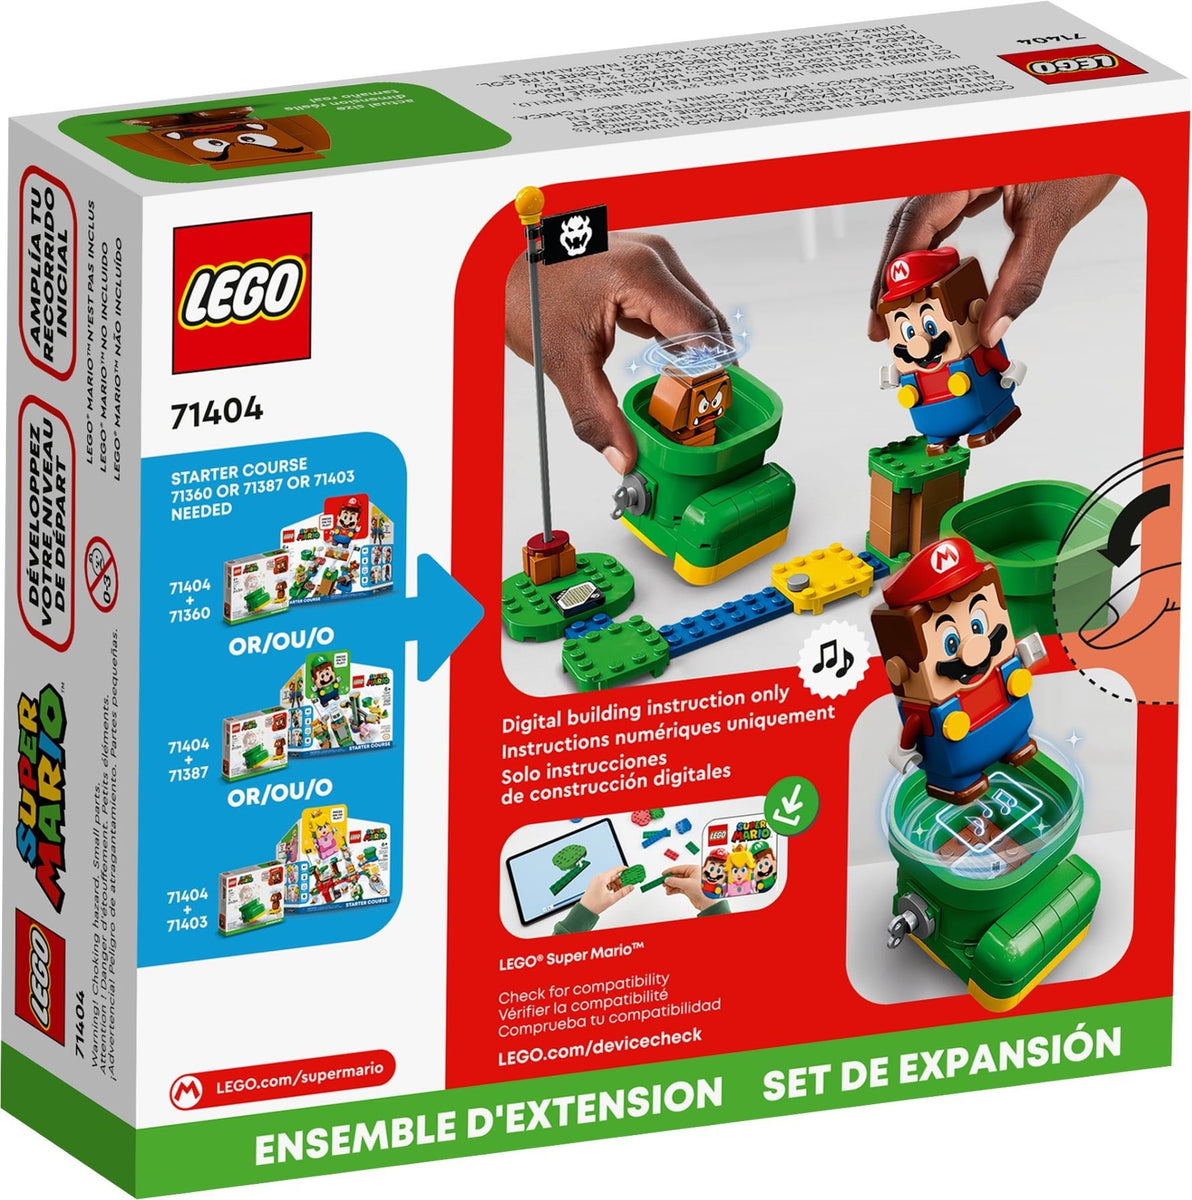 Hvad er der galt Børnecenter symaskine LEGO® Super Mario 71404 Goomba's Shoe (76 pieces) Expansion Pack – AESOP'S  FABLE